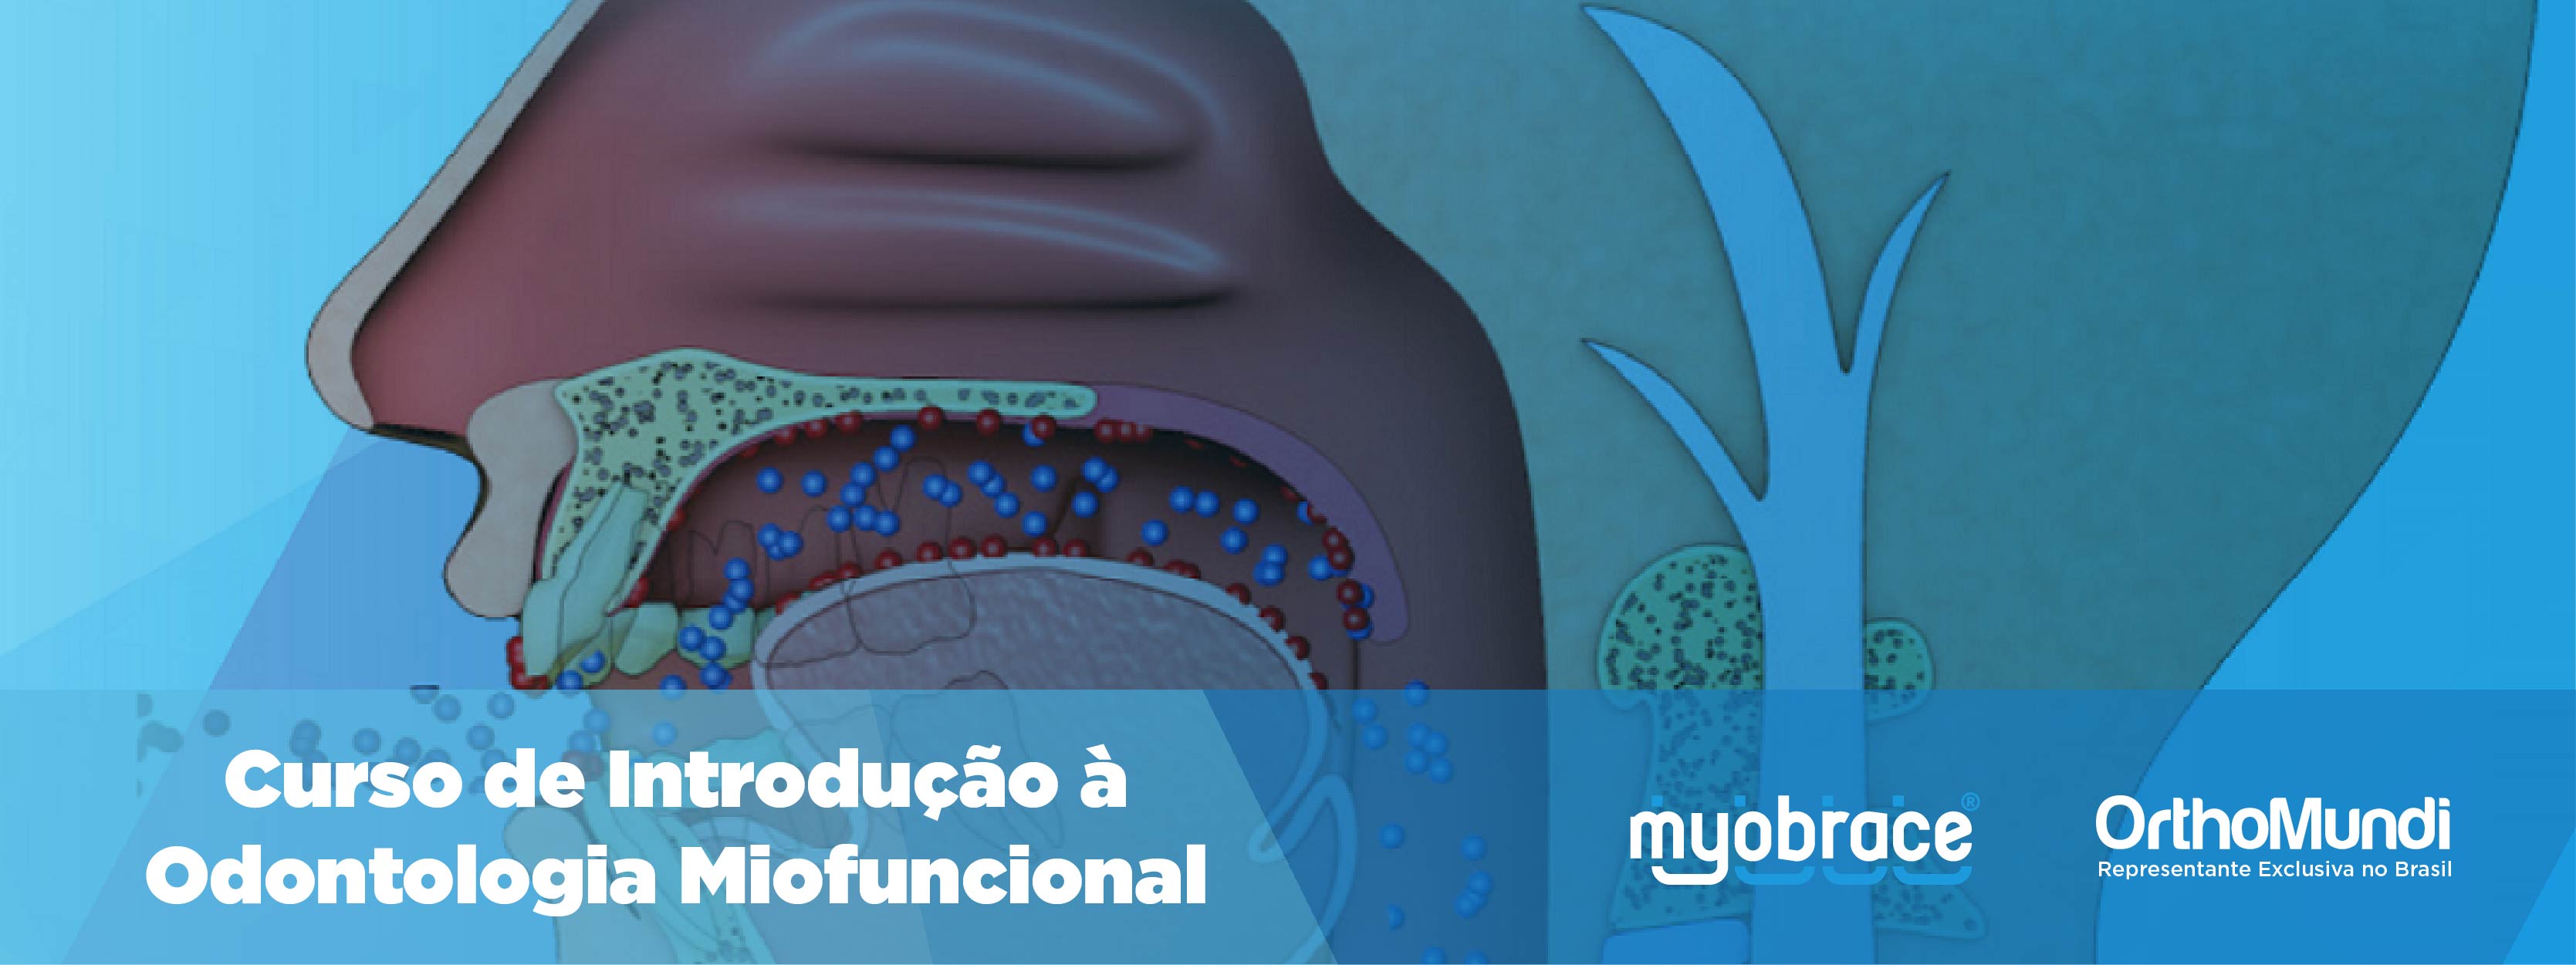 Banner - Curso de Introdução à Odontologia Miofuncional